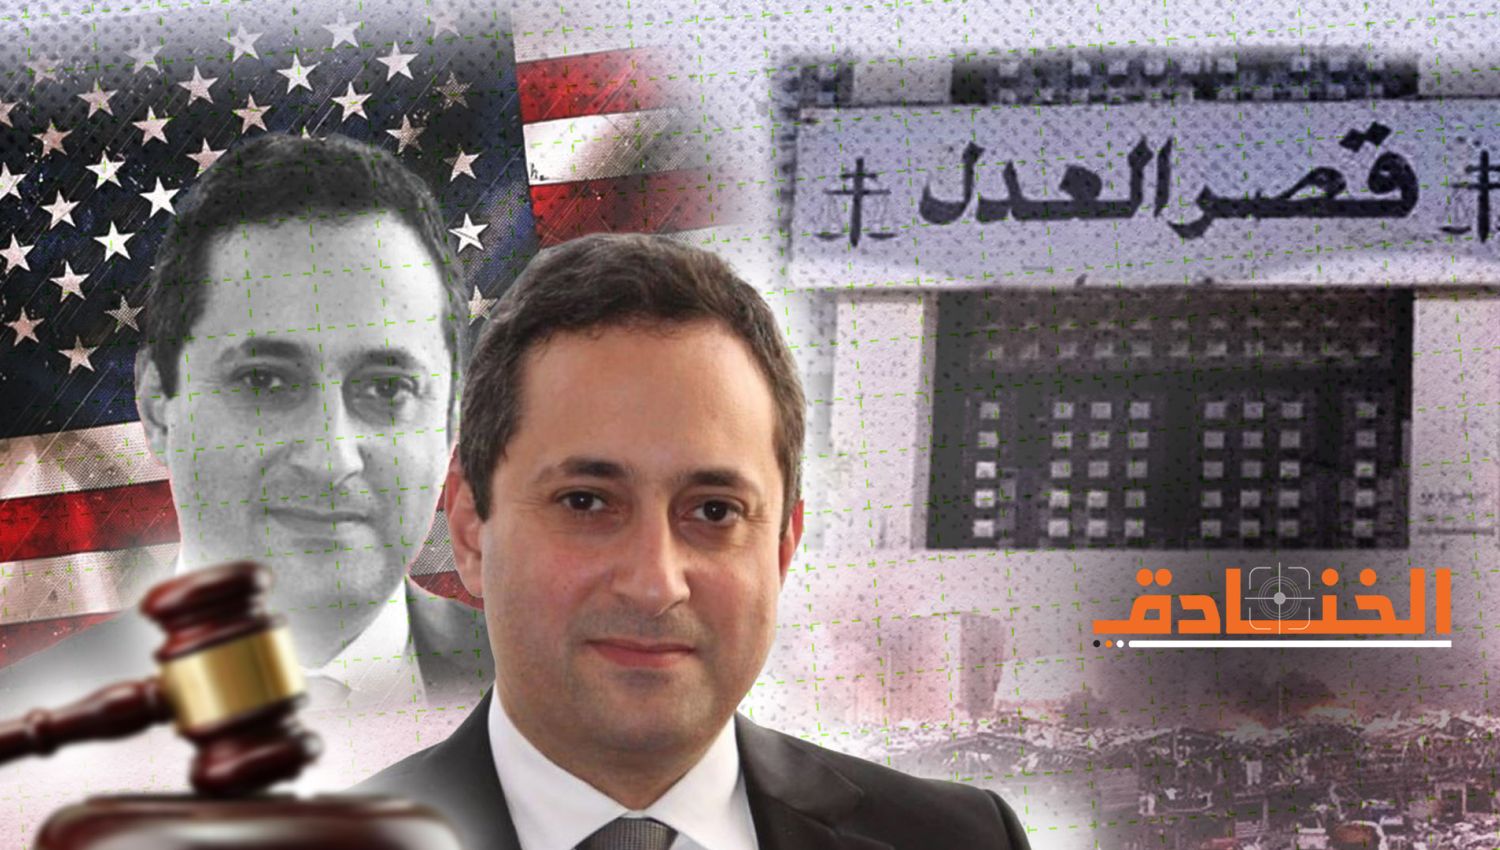 التدخل الأميركي غير المسبوق في القضاء يشعل لبنان مجددا